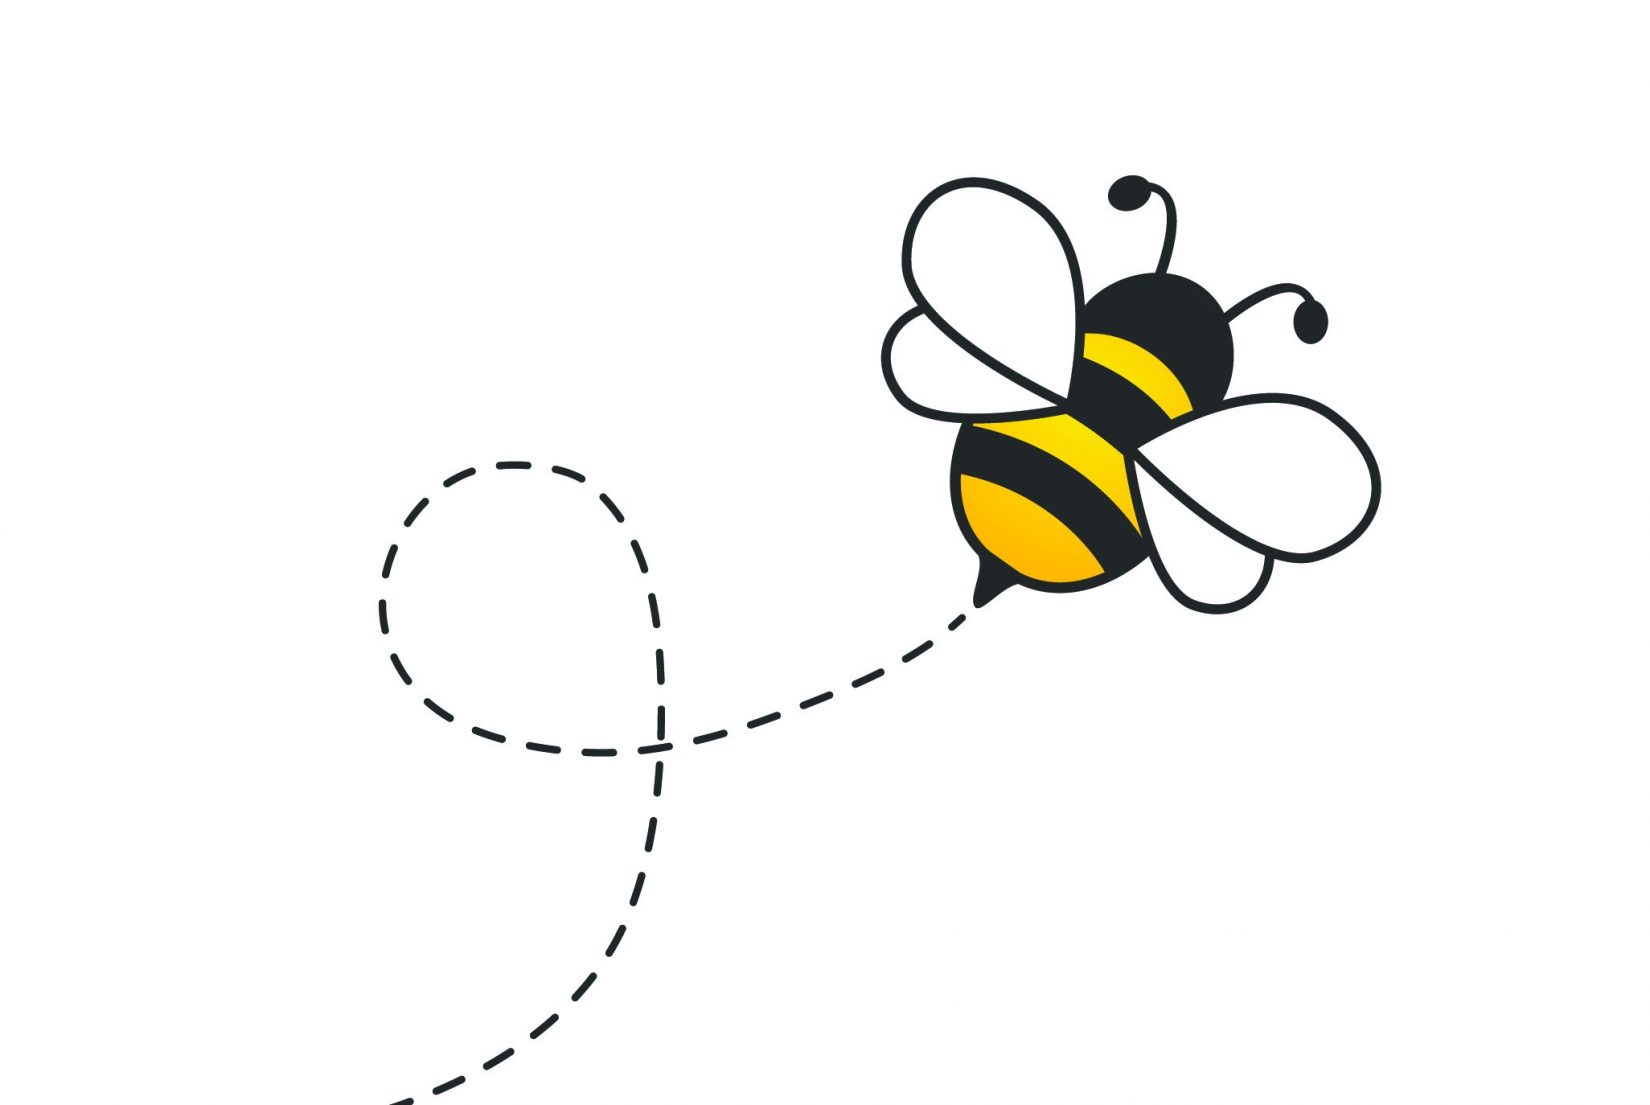 Bumble Bee buzzin around causing a buzz